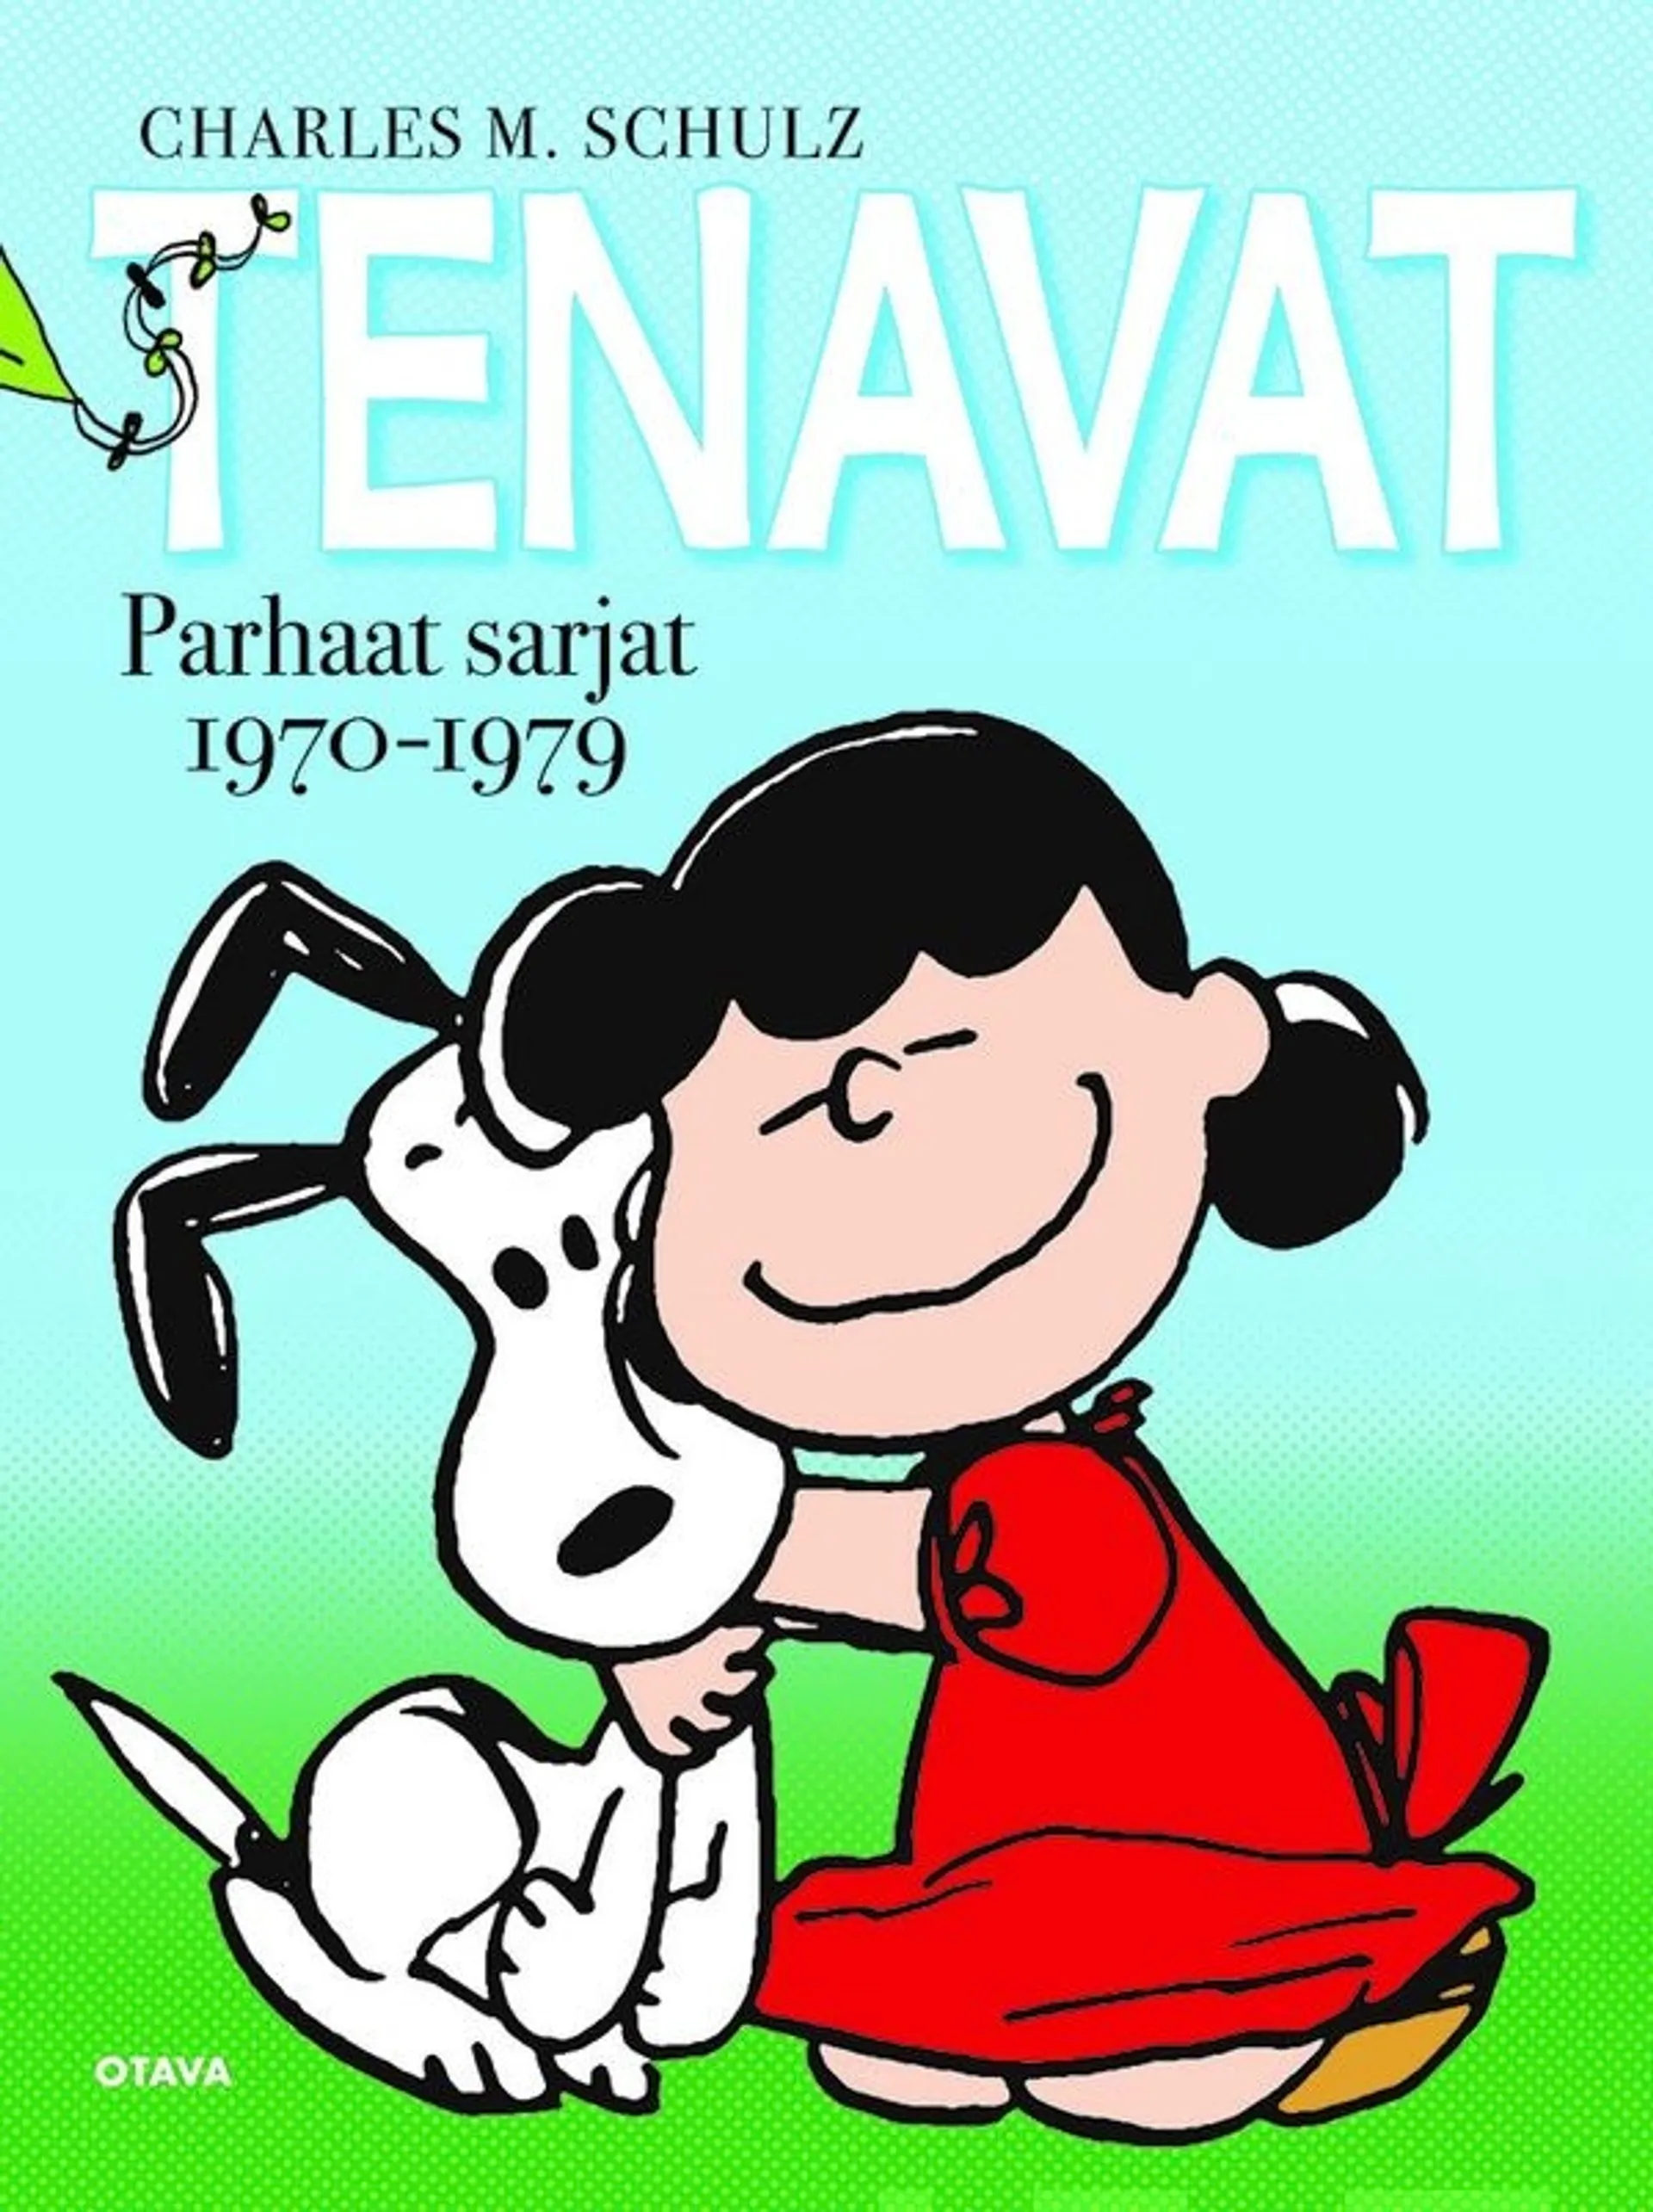 Schulz, Tenavat Parhaat sarjat 1970-1979